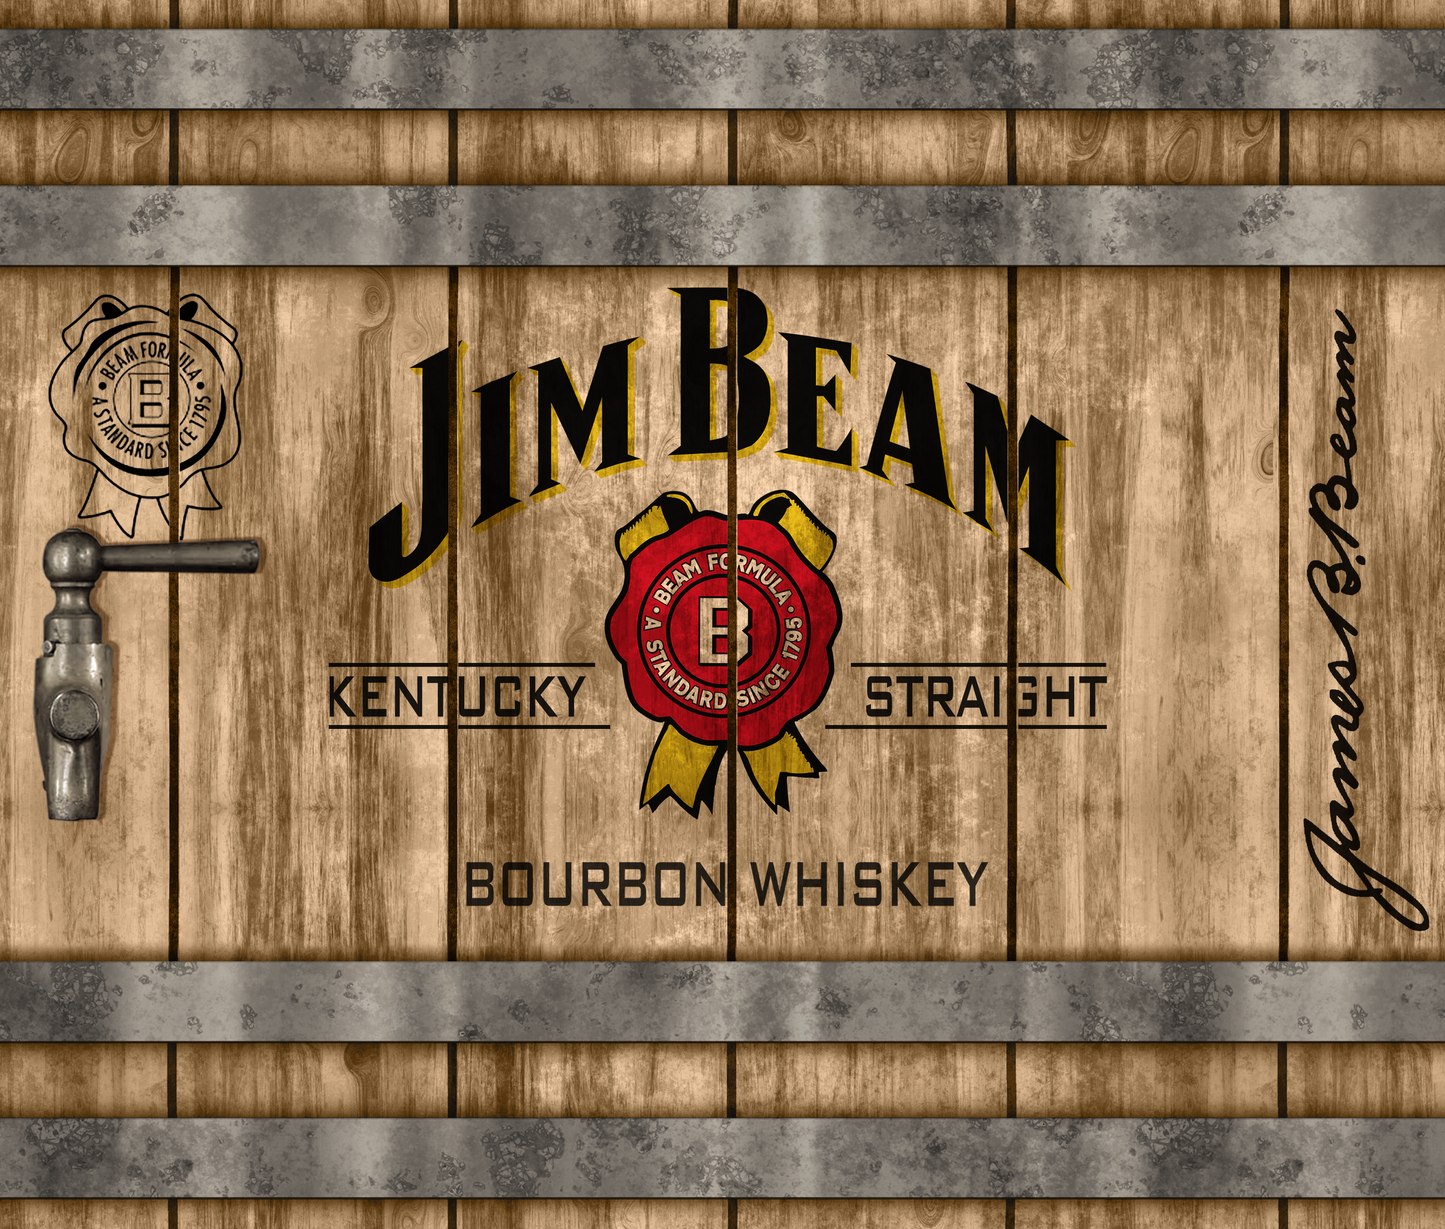 Tumbler 20 oz Jim Beam Bourbon